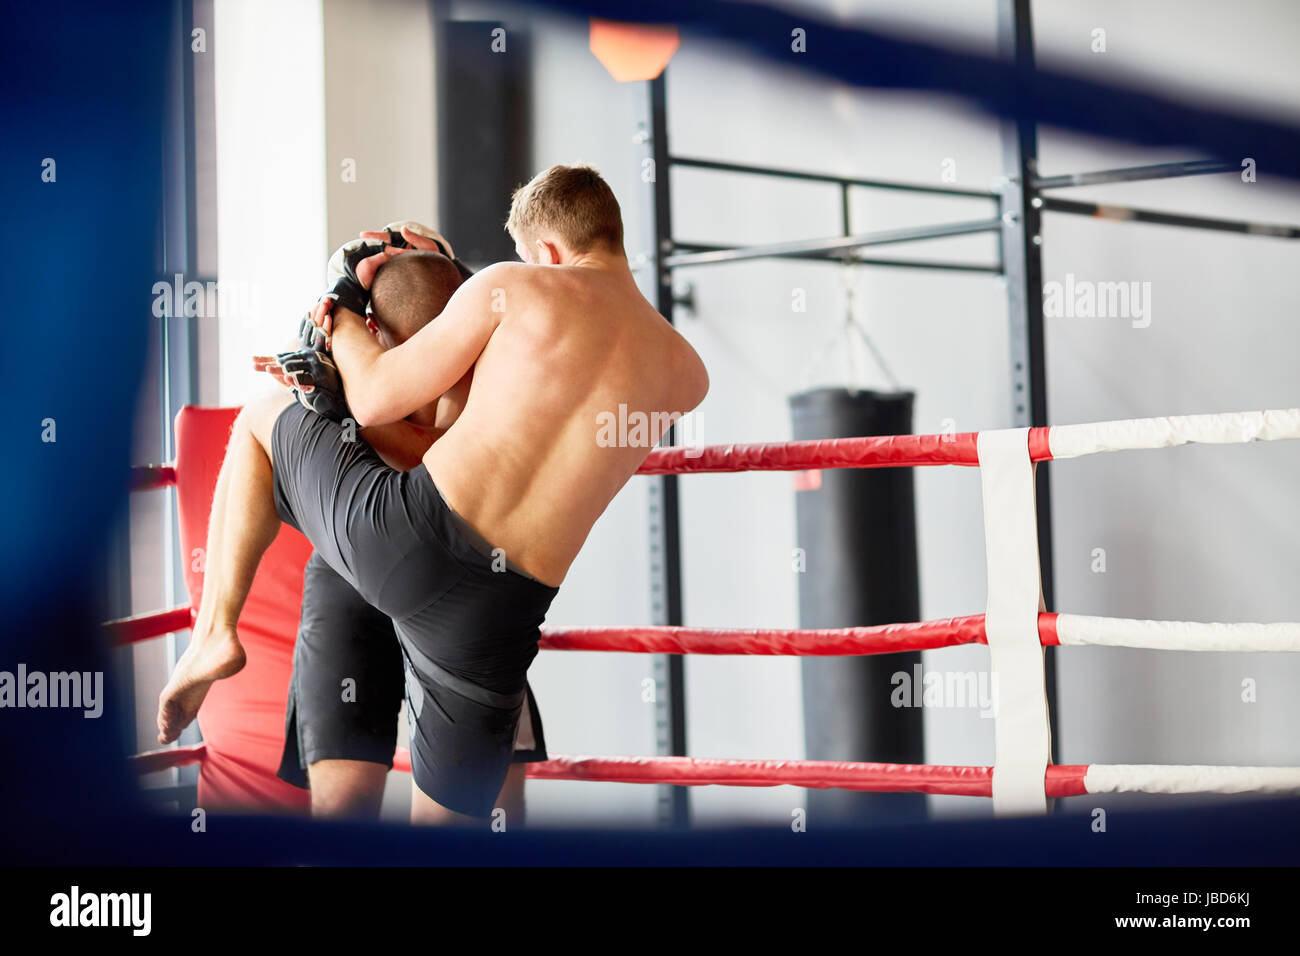 Porträt Von Nacktem Oberkörper Wrestler Im Kampf Mit Gegner Im Boxring